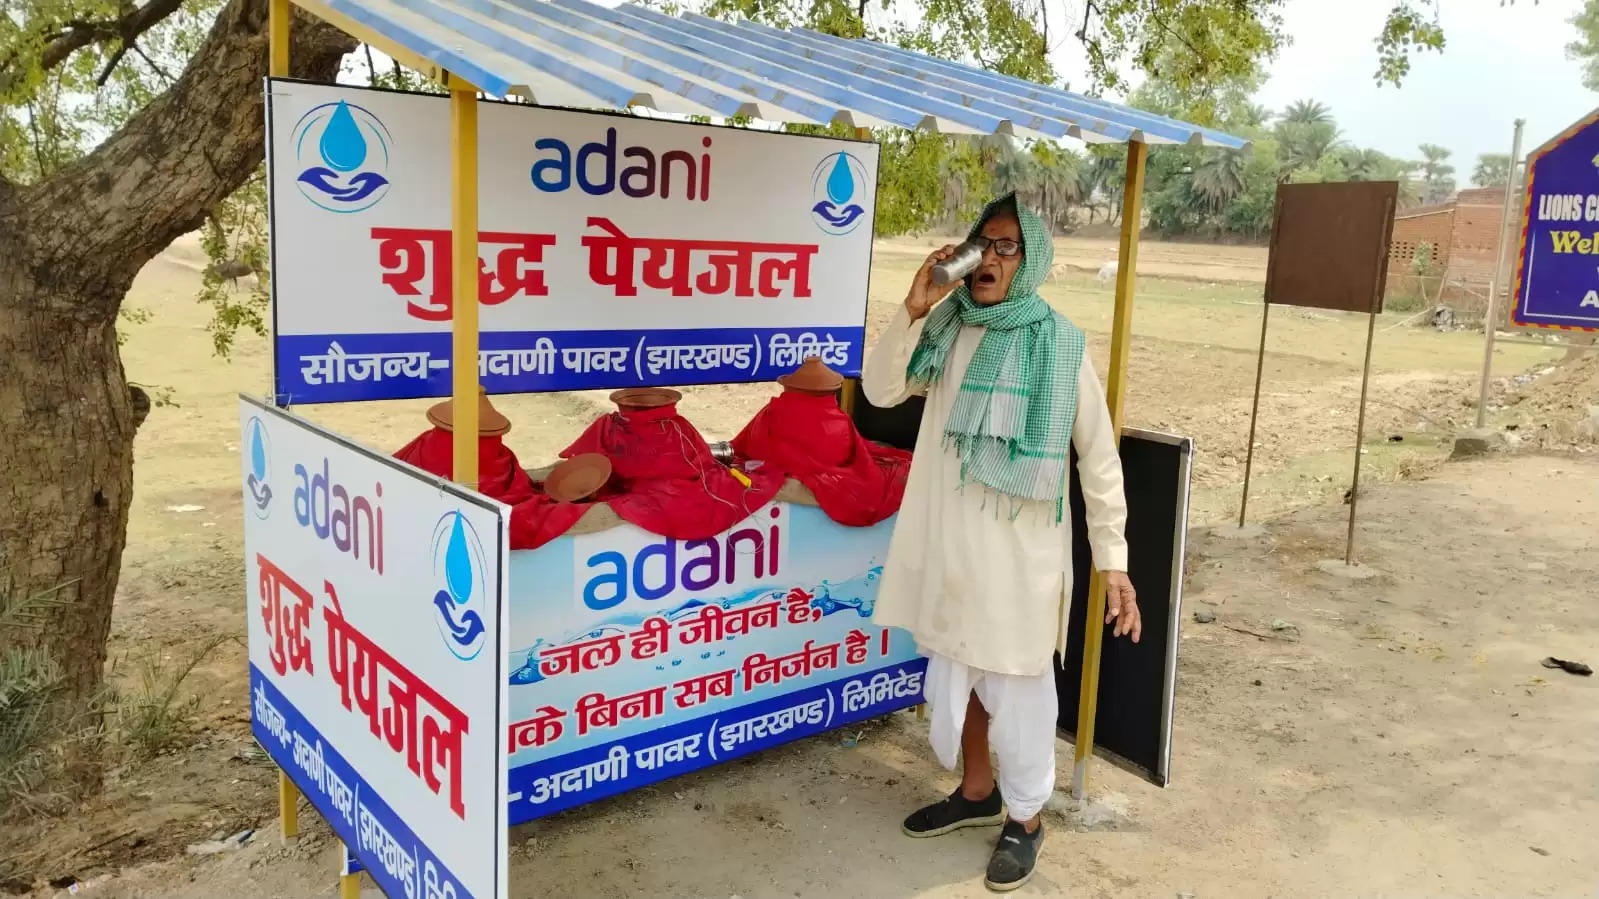 अदाणी फाउंडेशन द्वारा 13 जगहों पर की गई राहगीरों के लिए प्याऊ की व्यवस्था